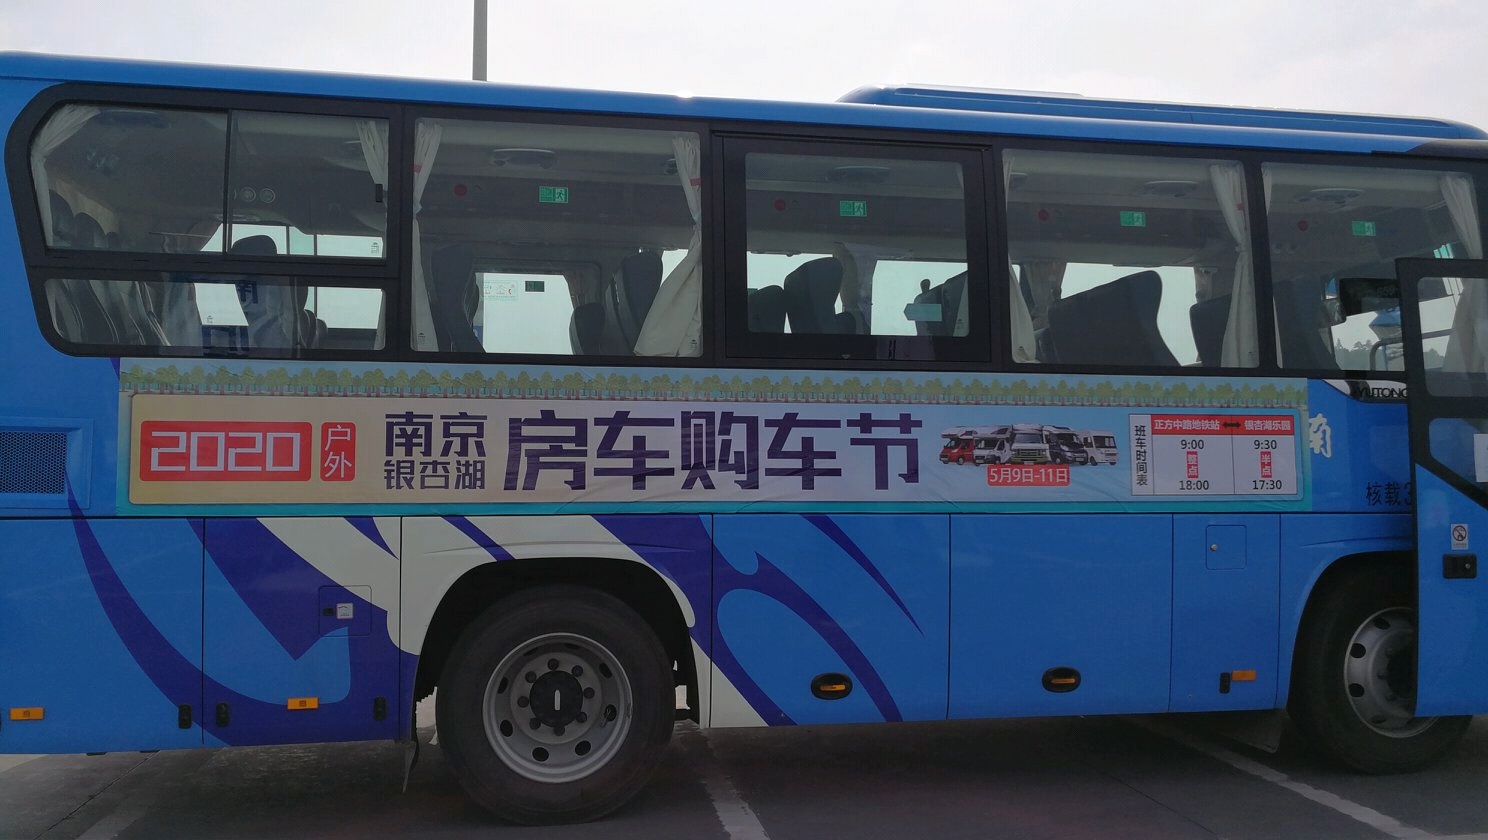 2020南京房车购车节在绿草如茵的银杏湖乐园举行